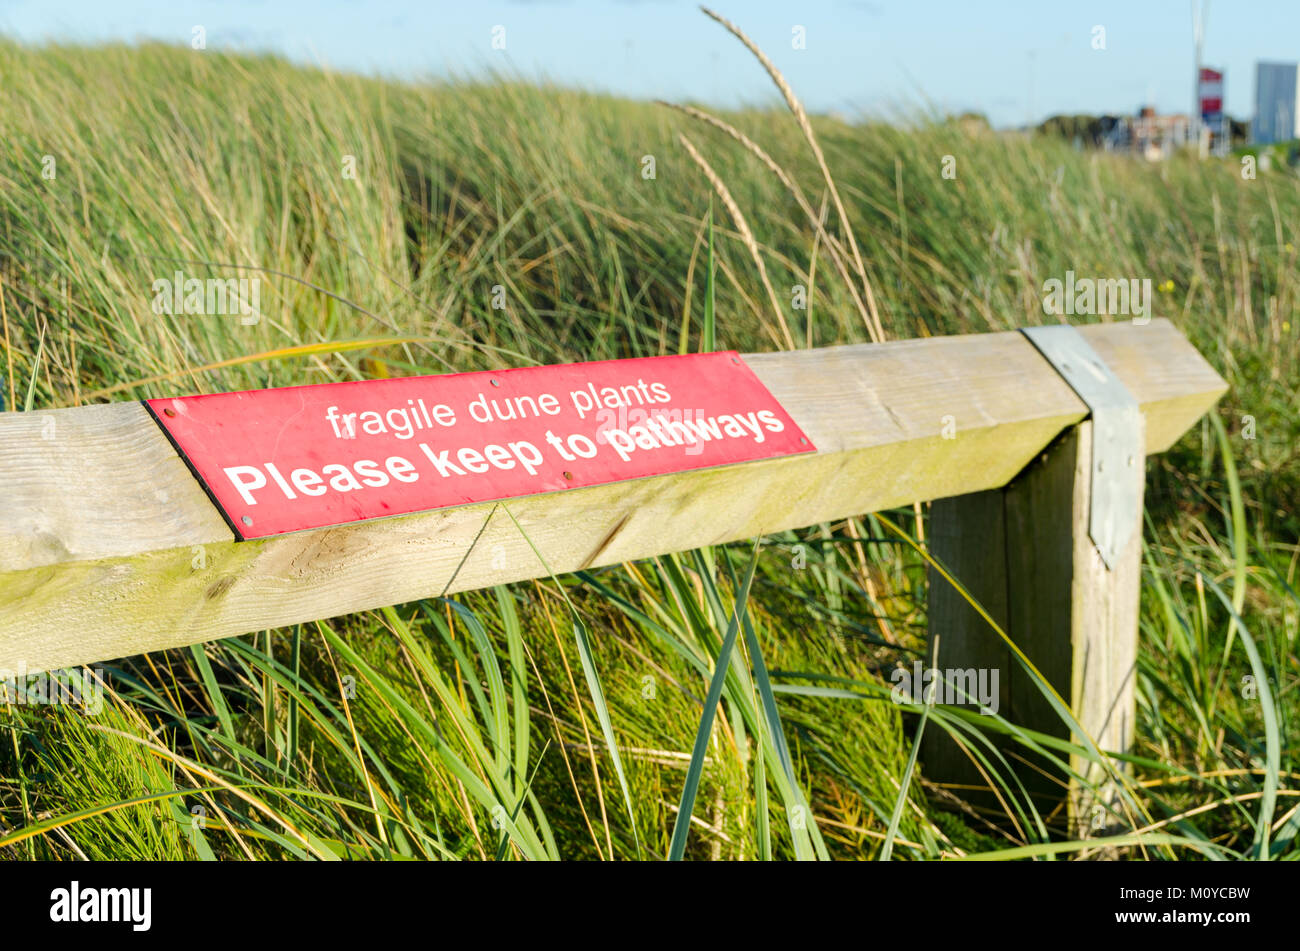 Segno di avvertimento per proteggere duna di sabbia piante, la lettura 'fragili dune piante - Si prega di tenere a Pathways', situato a Sandhaven, South Shields Foto Stock